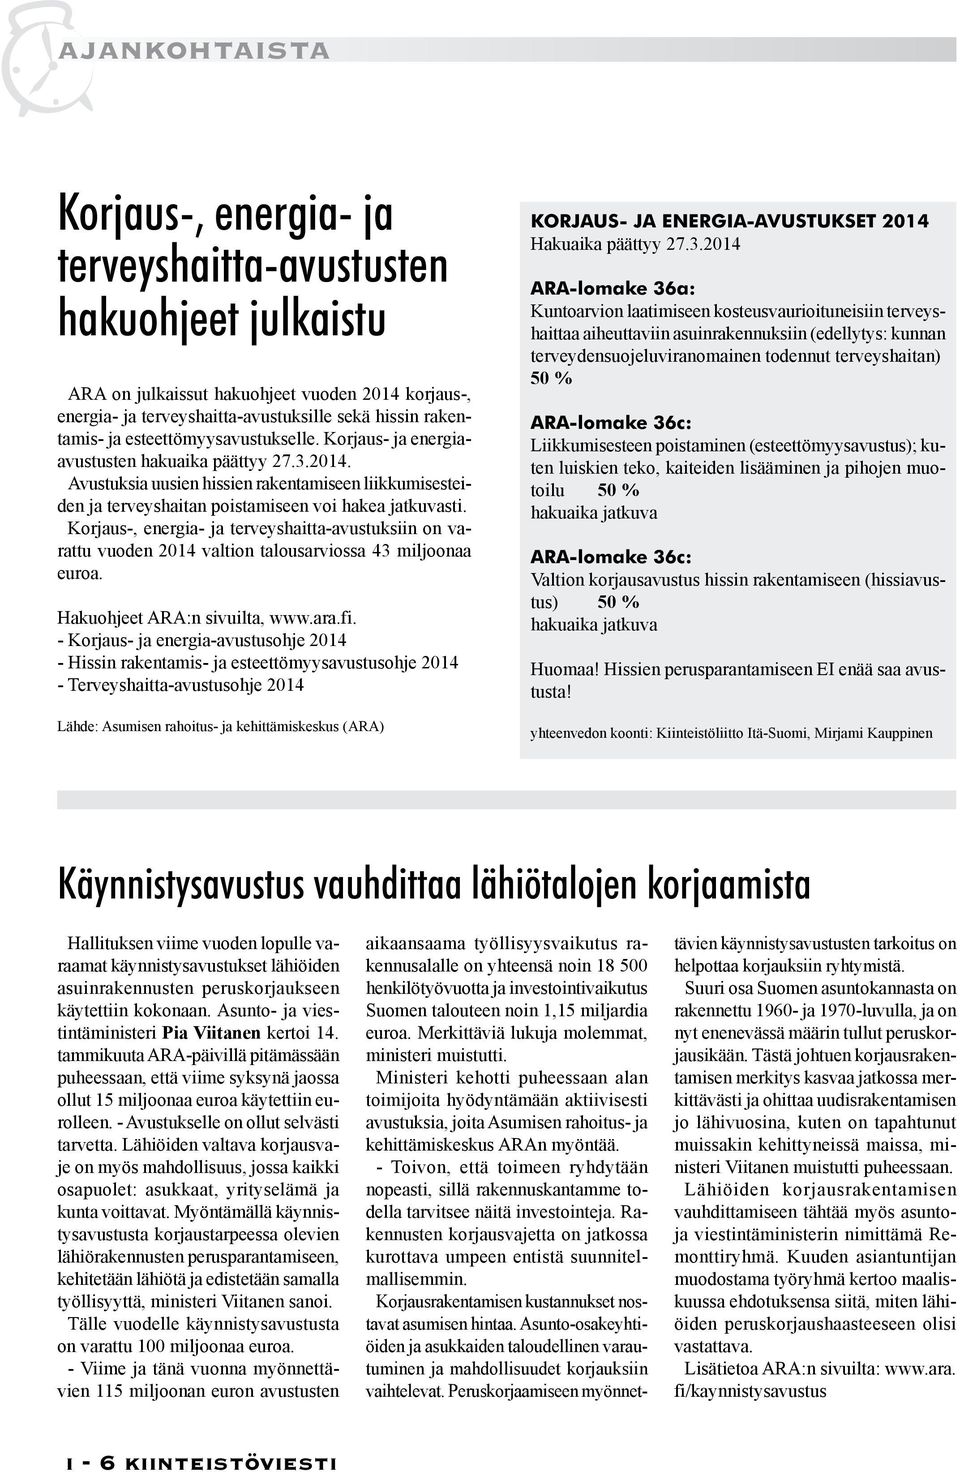 Korjaus-, energia- ja terveyshaitta-avustuksiin on varattu vuoden 2014 valtion talousarviossa 43 miljoonaa euroa. Hakuohjeet ARA:n sivuilta, www.ara.fi.